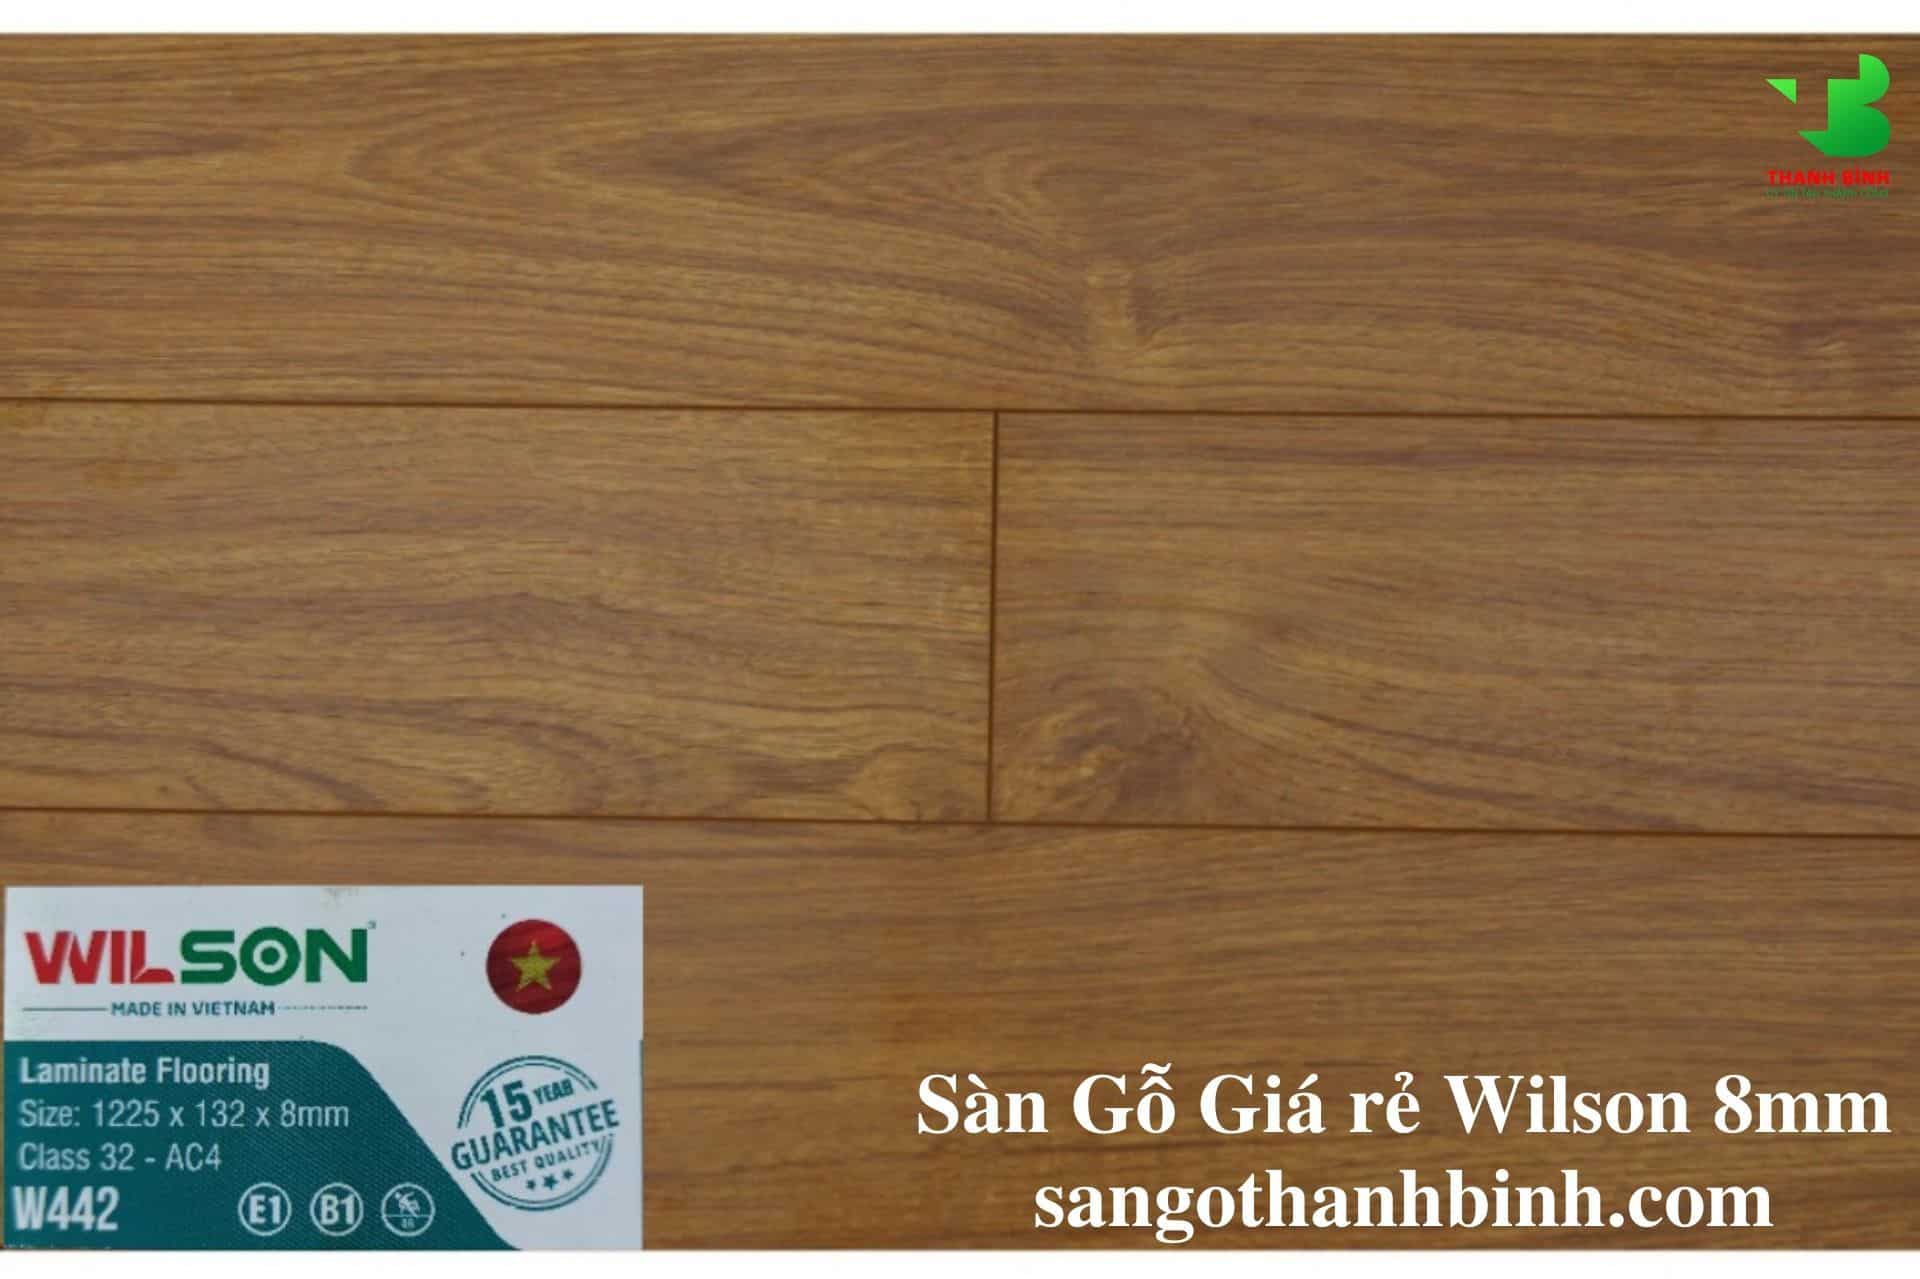 San go Viet Nam Wilson 8mm W442 Ban nho